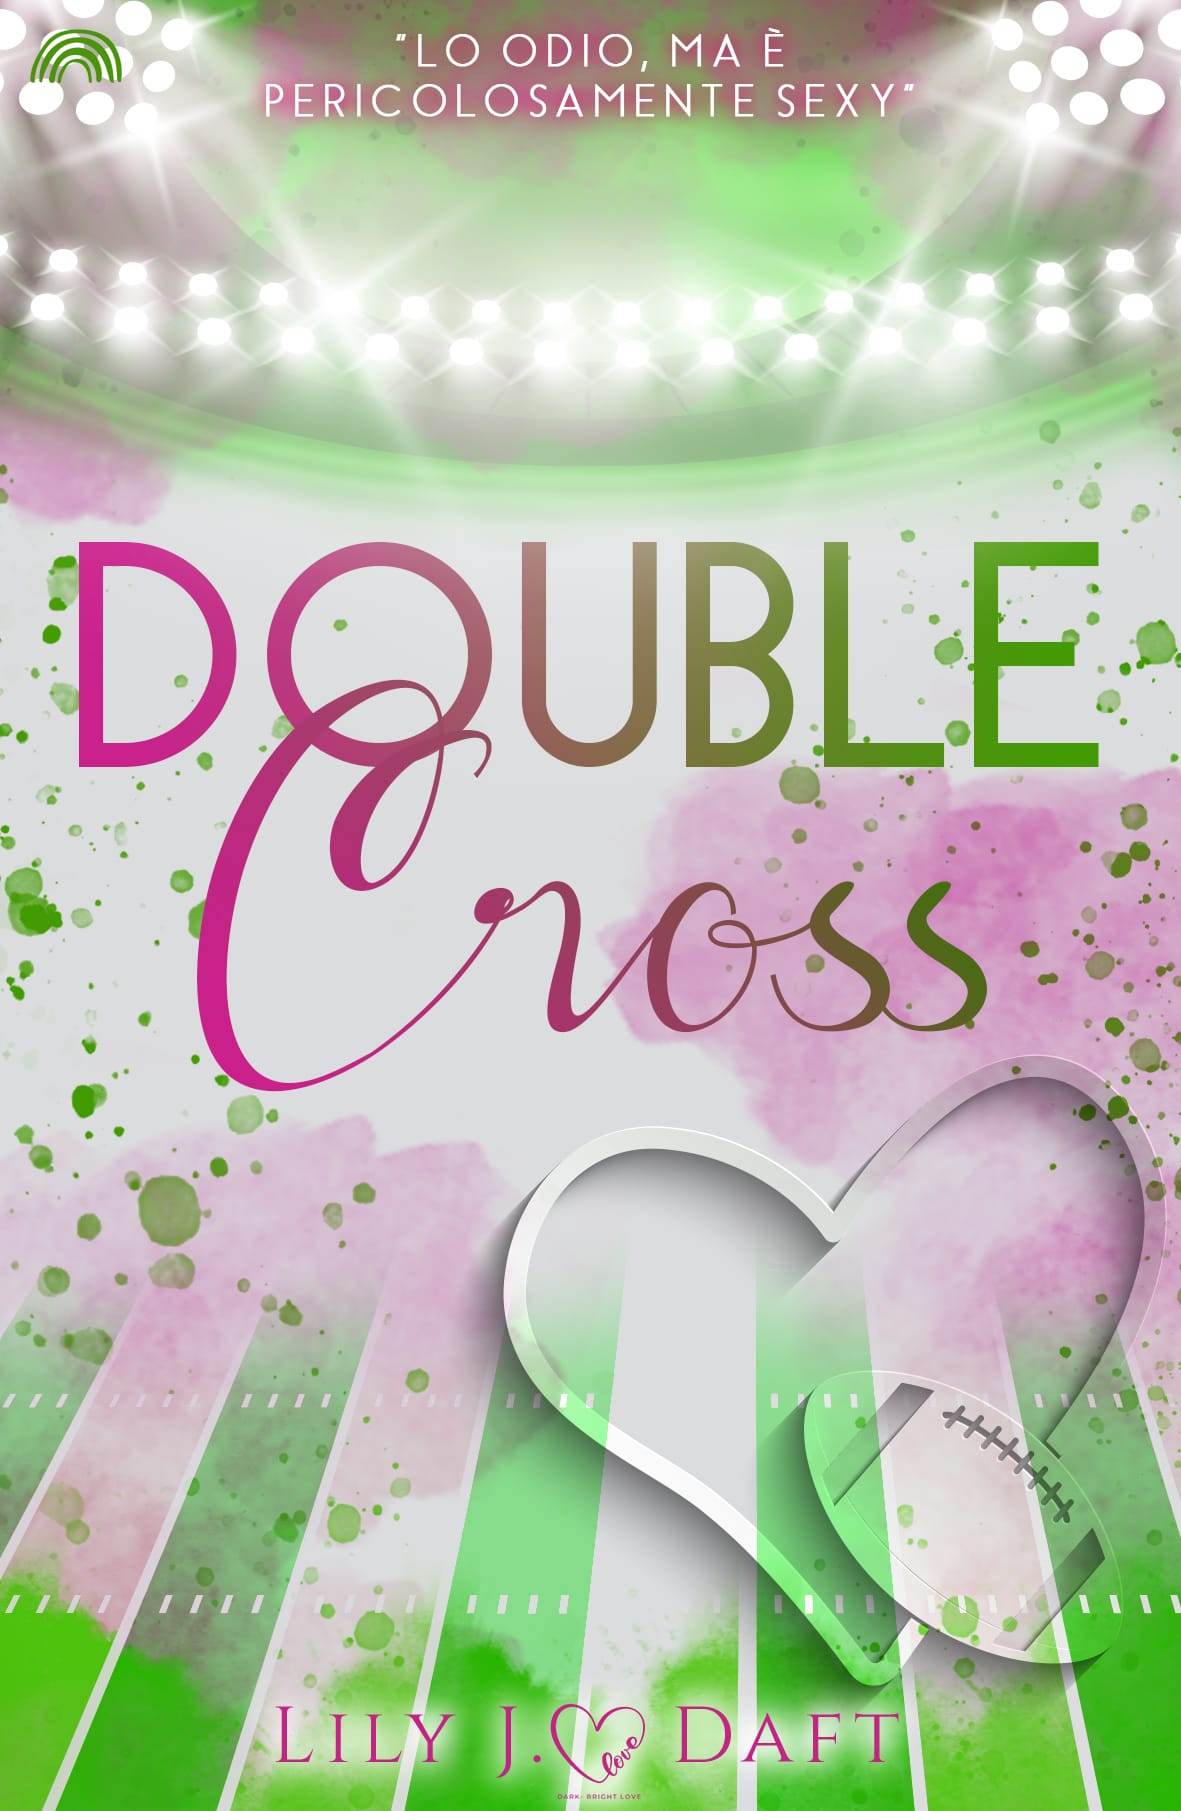 Recensione “Double cross” di Lily J. Daft